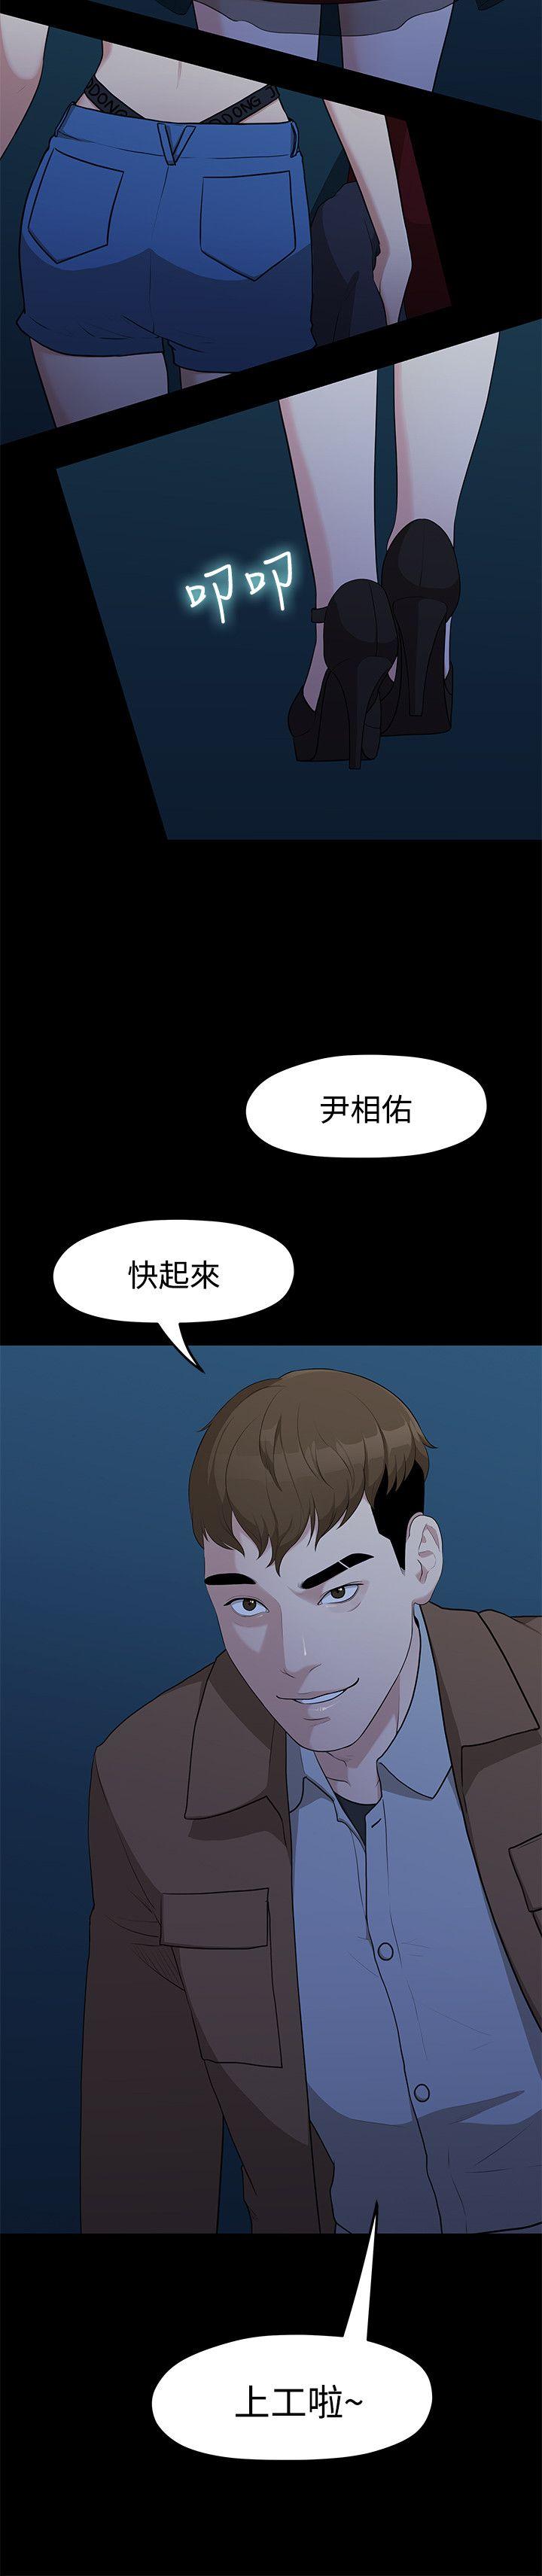 韩国污漫画 我們的非常關系 第4话 23